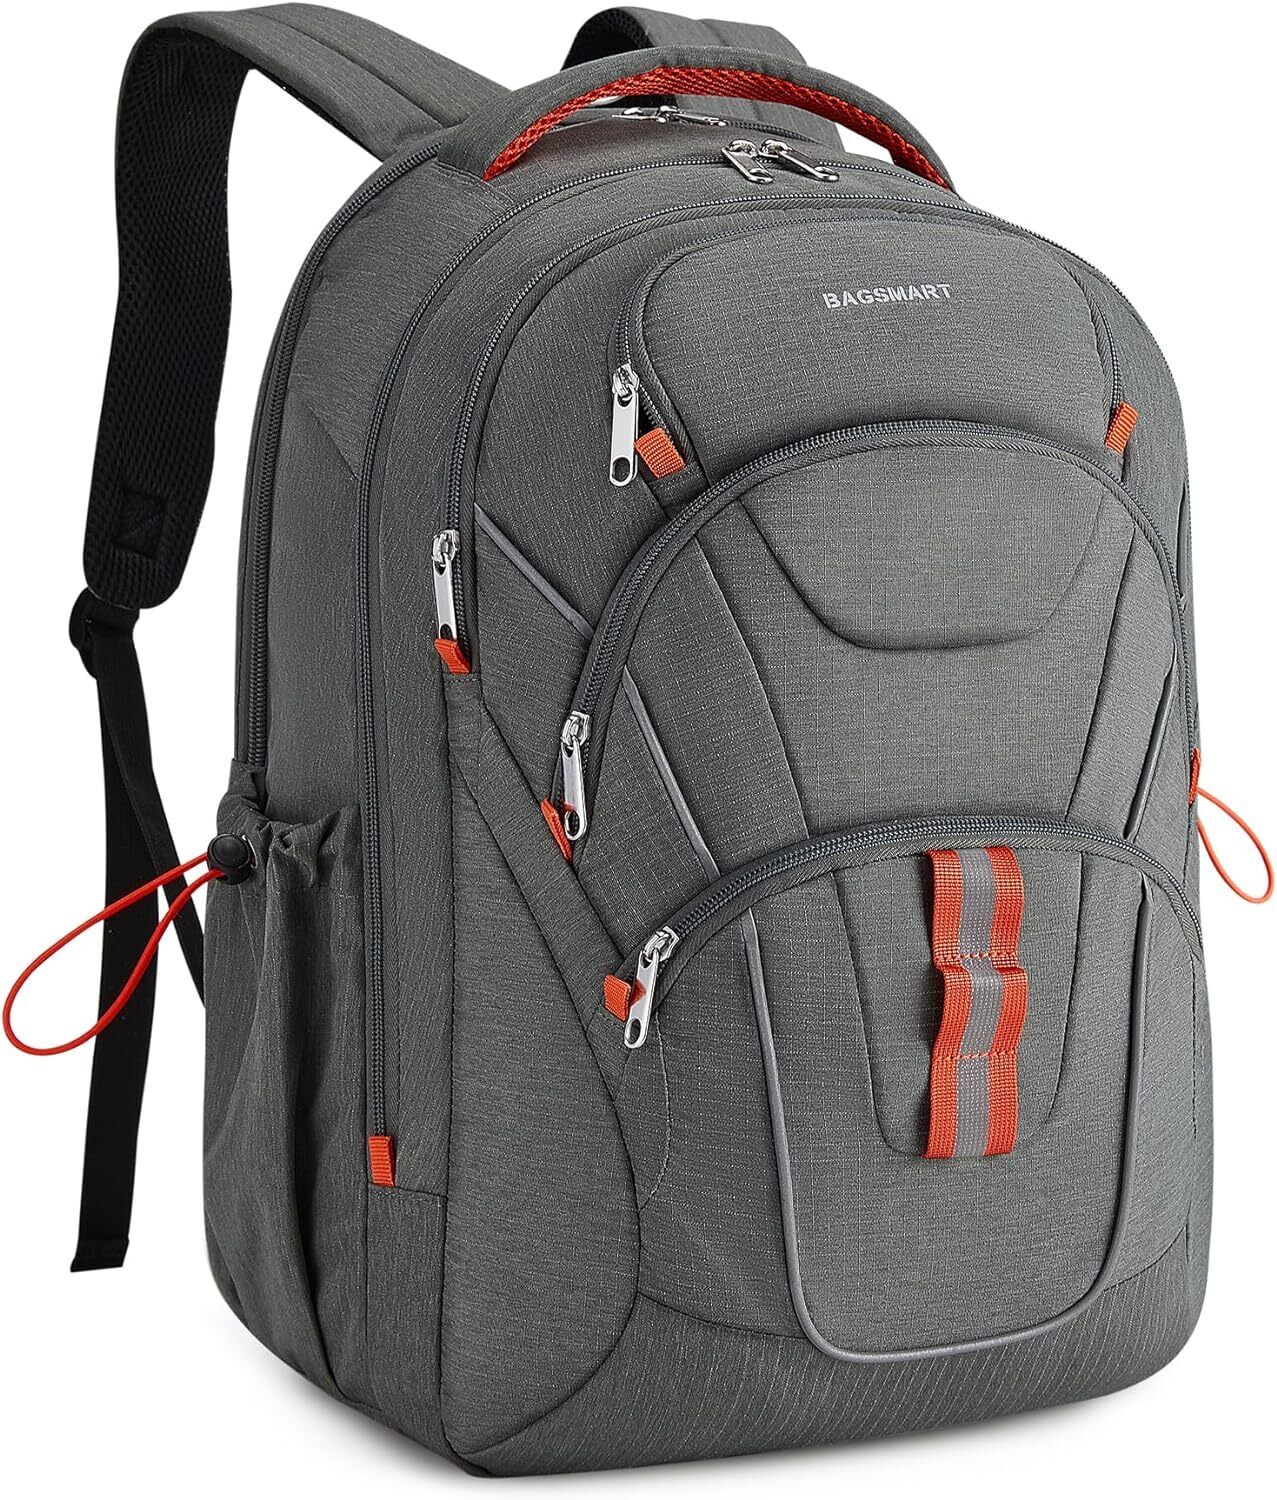 BAGSMART Large Travel Backpack for Women Men,Laptop Flight Grey 